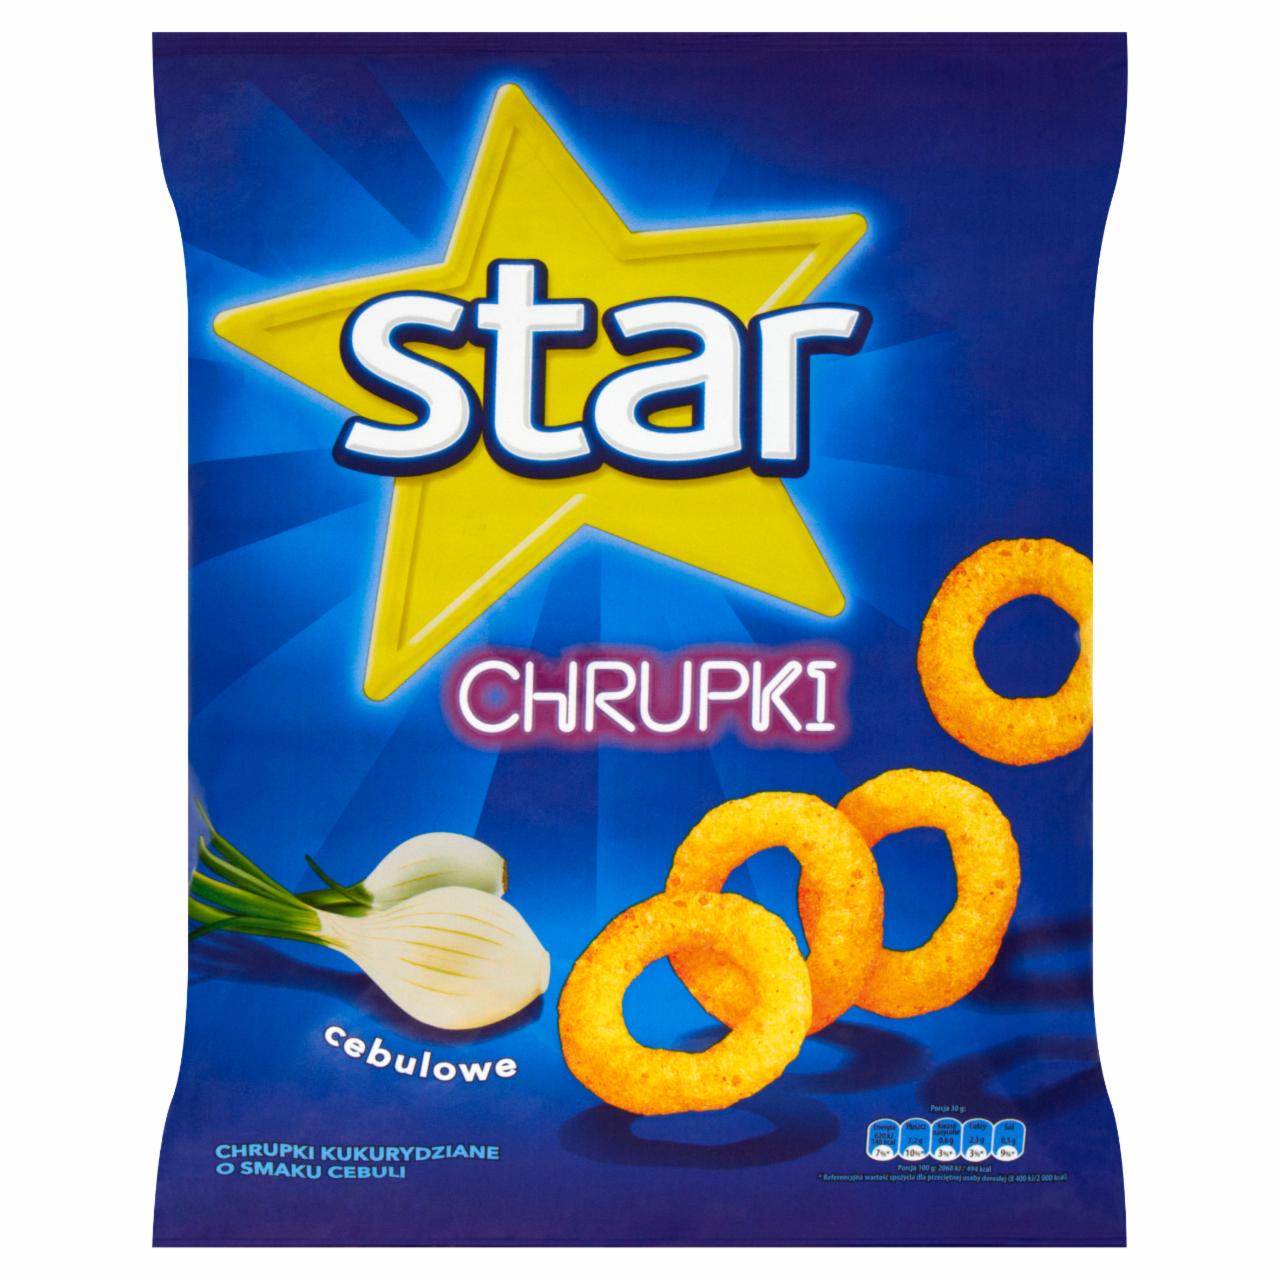 Zdjęcia - Star Chrupki cebulowe 150 g